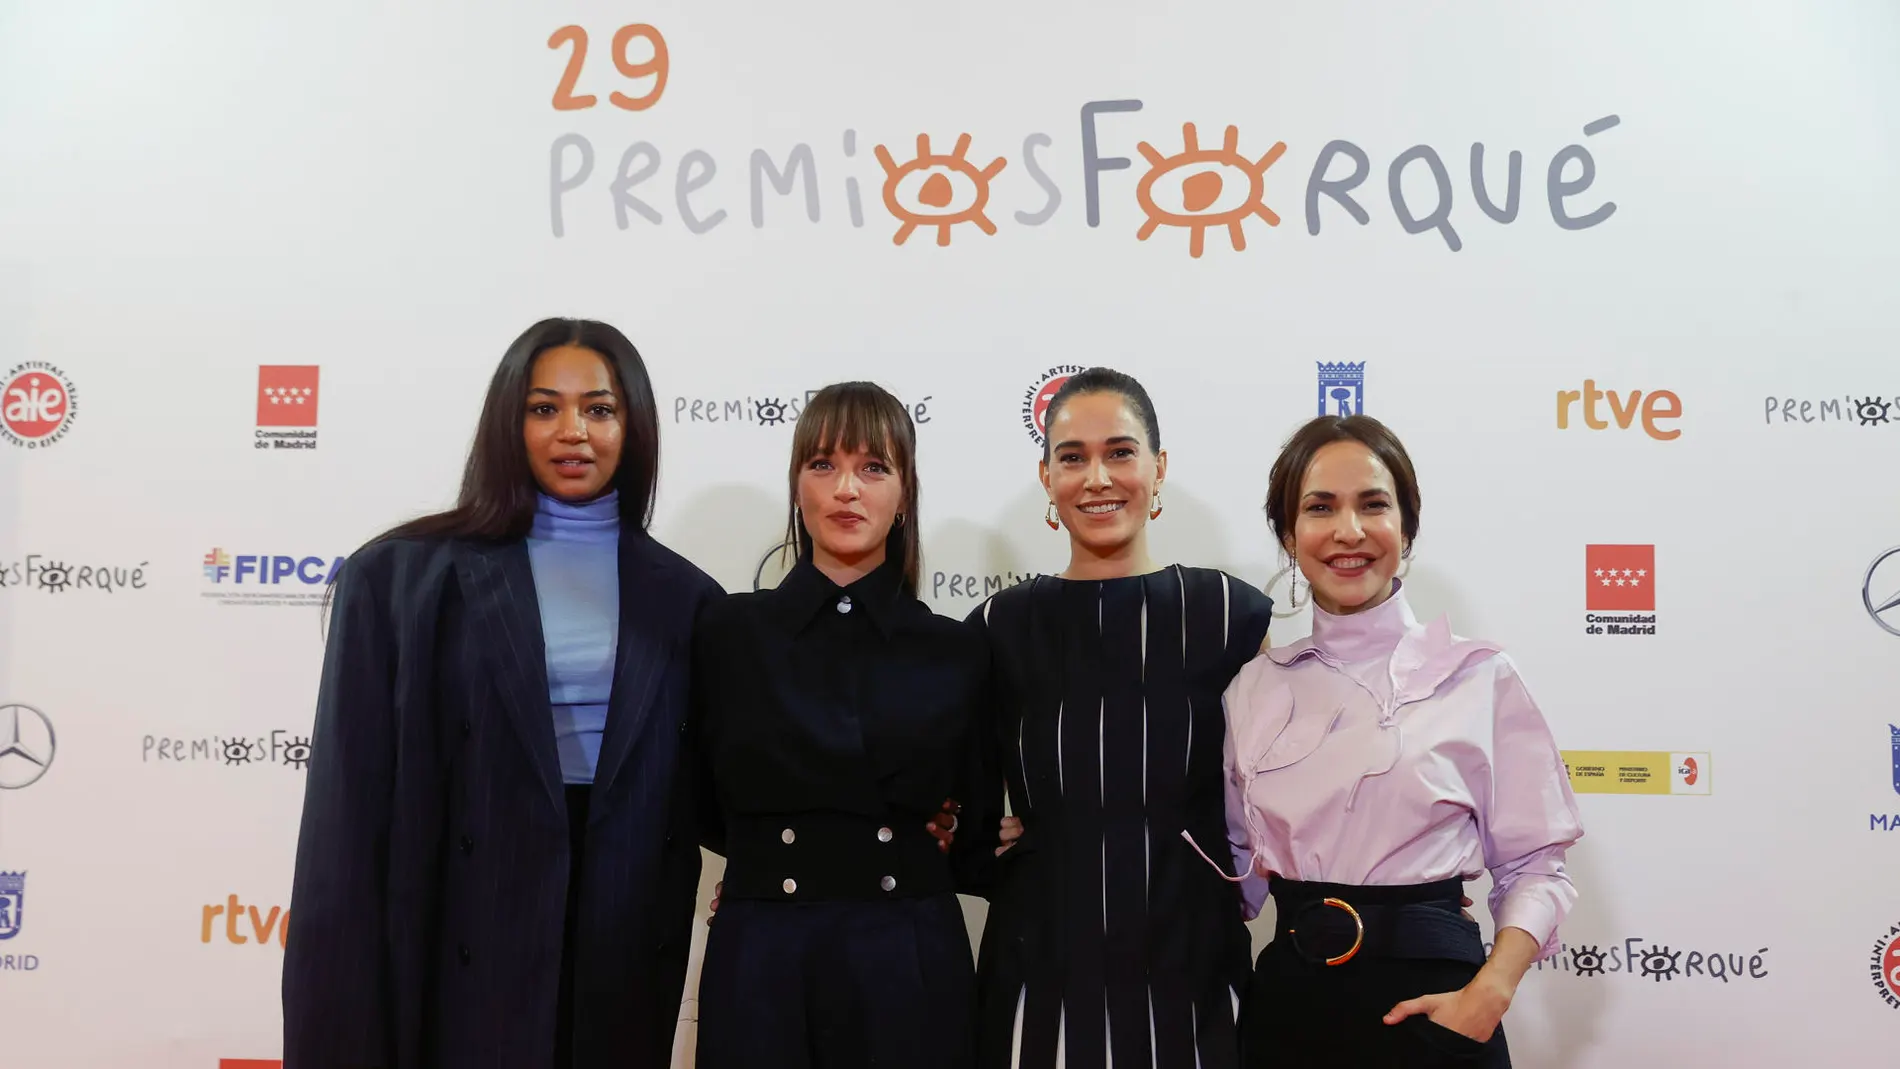 Las actrices Berta Vázquez, Susana Abaitua, Celia Freijeiro (también productora) y la directora Paula Ortiz han comunicado las nominaciones a los Premios Forqué.